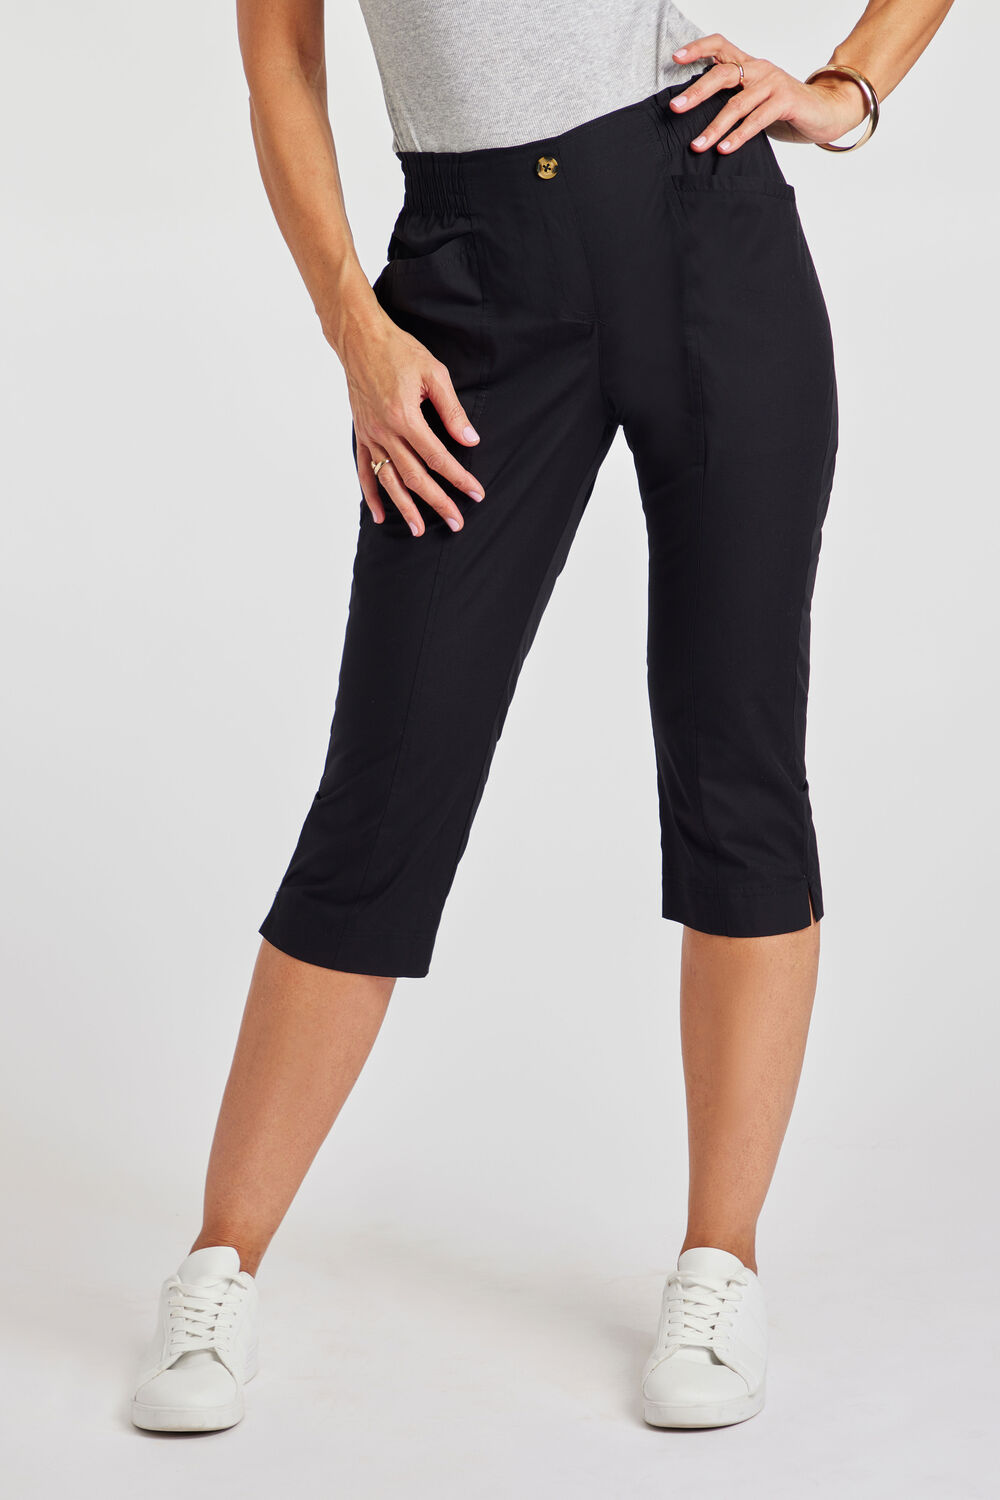 Bonmarche Ladies Black Essential Elastic Back Crop Trousers, Size: 20